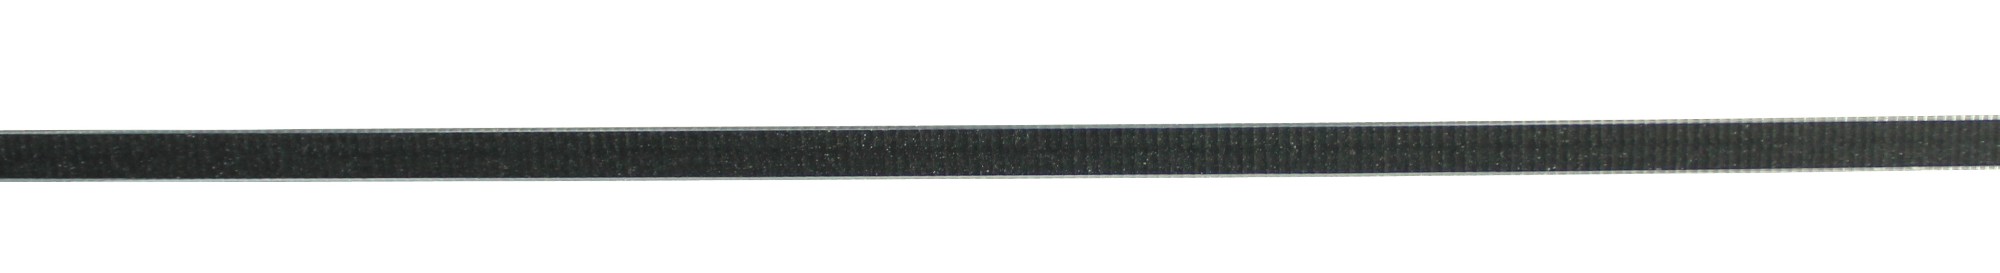 Aluminum Composite Panel Anti-scratch Series